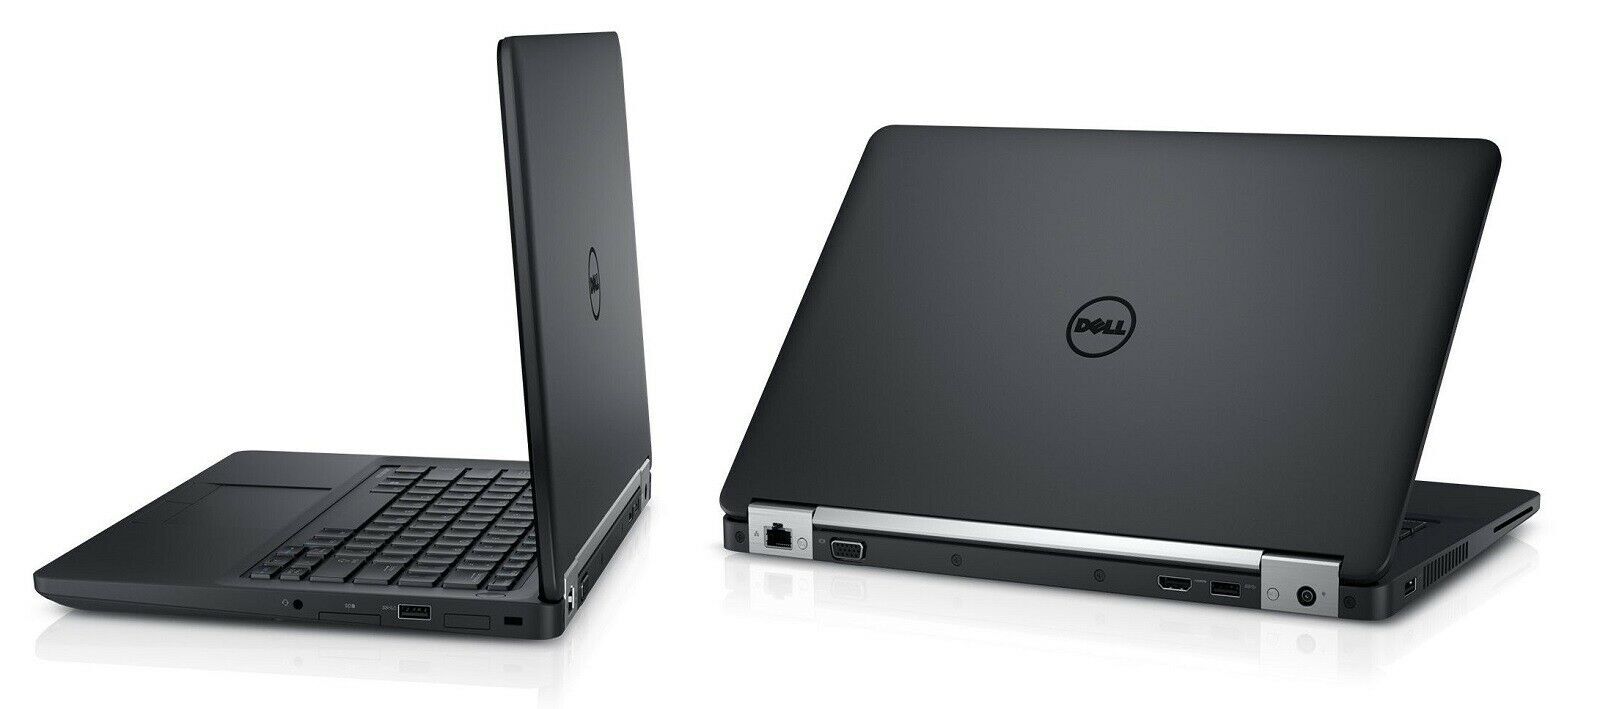 Dell Latitude E5270 Intel i3 6100U 2.30GHz 8GB RAM 128GB SSD 12.5" Win 10 Image 1